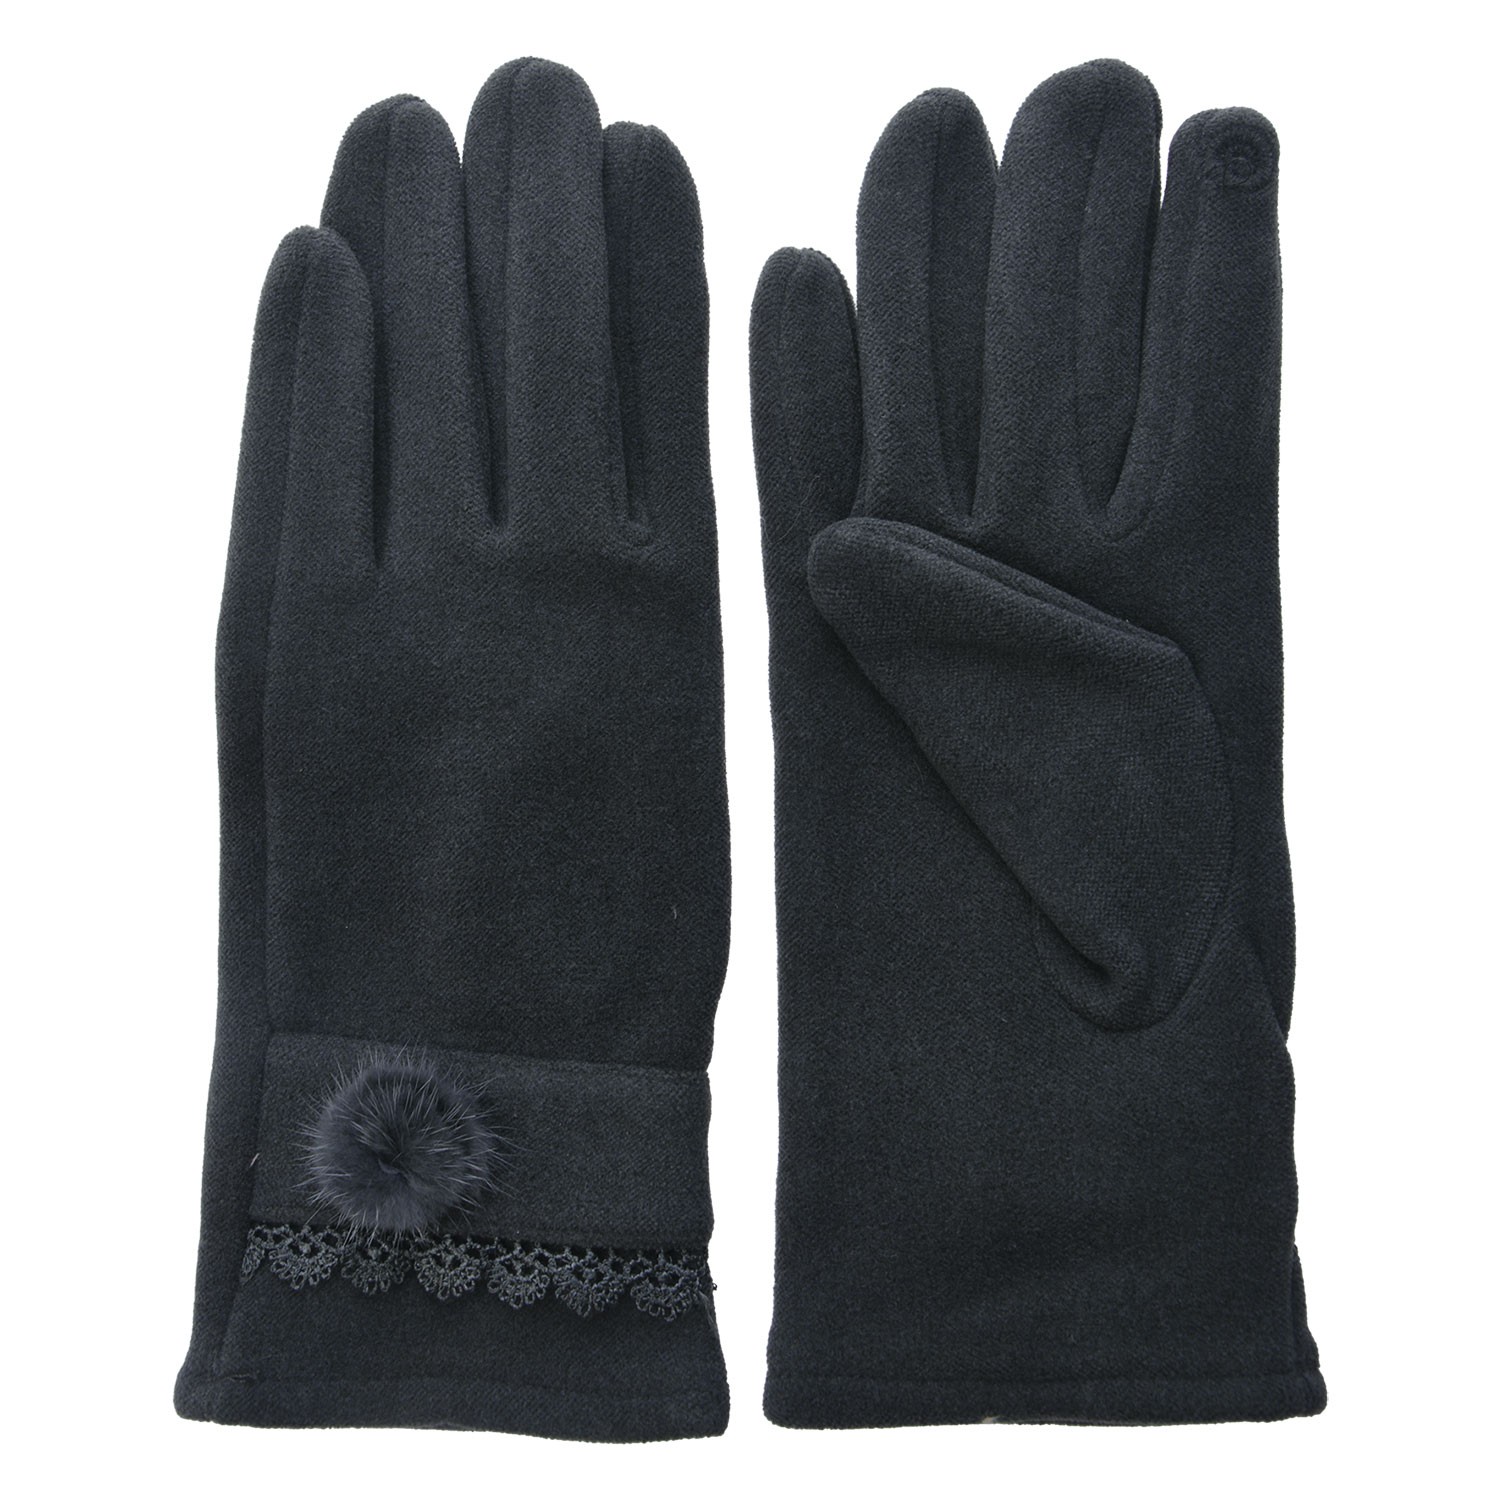 Tmavě šedé dámské rukavice s krajkou - 8*24 cm MLGL0047G